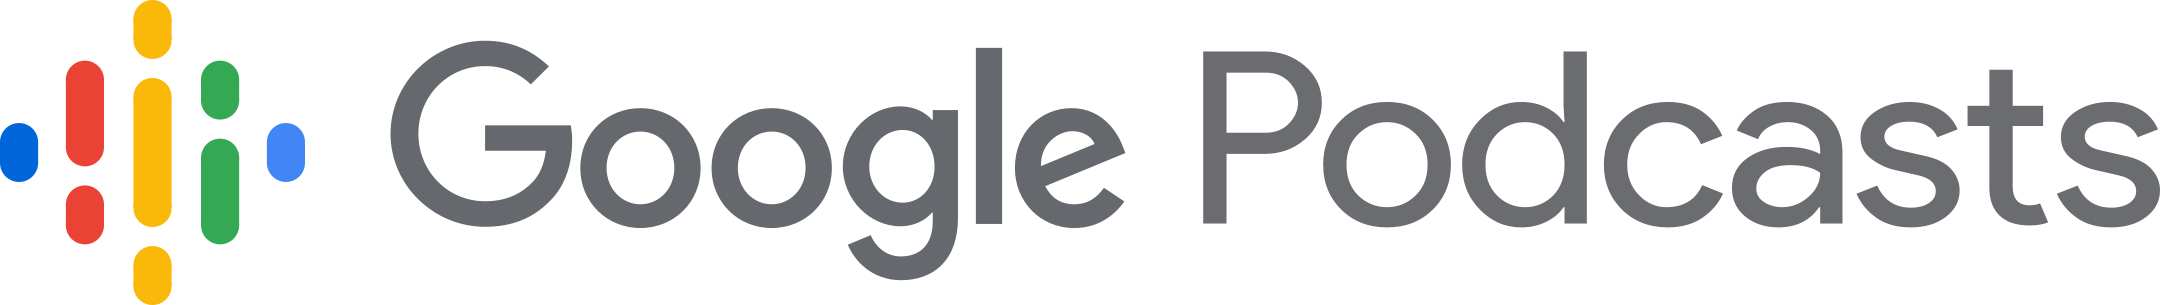 google podcasts logo 1 - Google Podcasts Logo